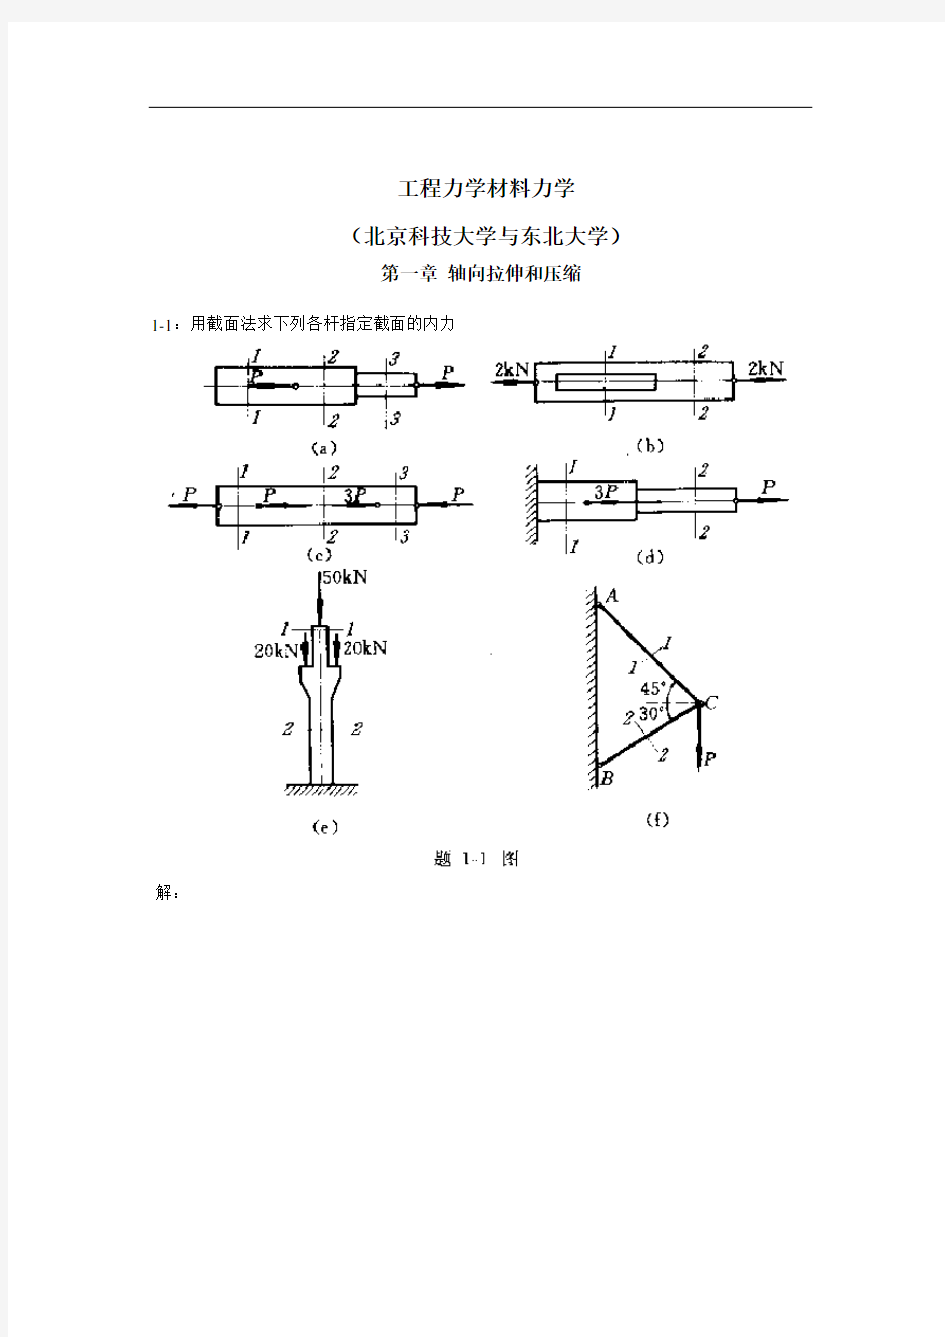 工程力学材料力学第四版(北京科技大学与东北大学)习题答案